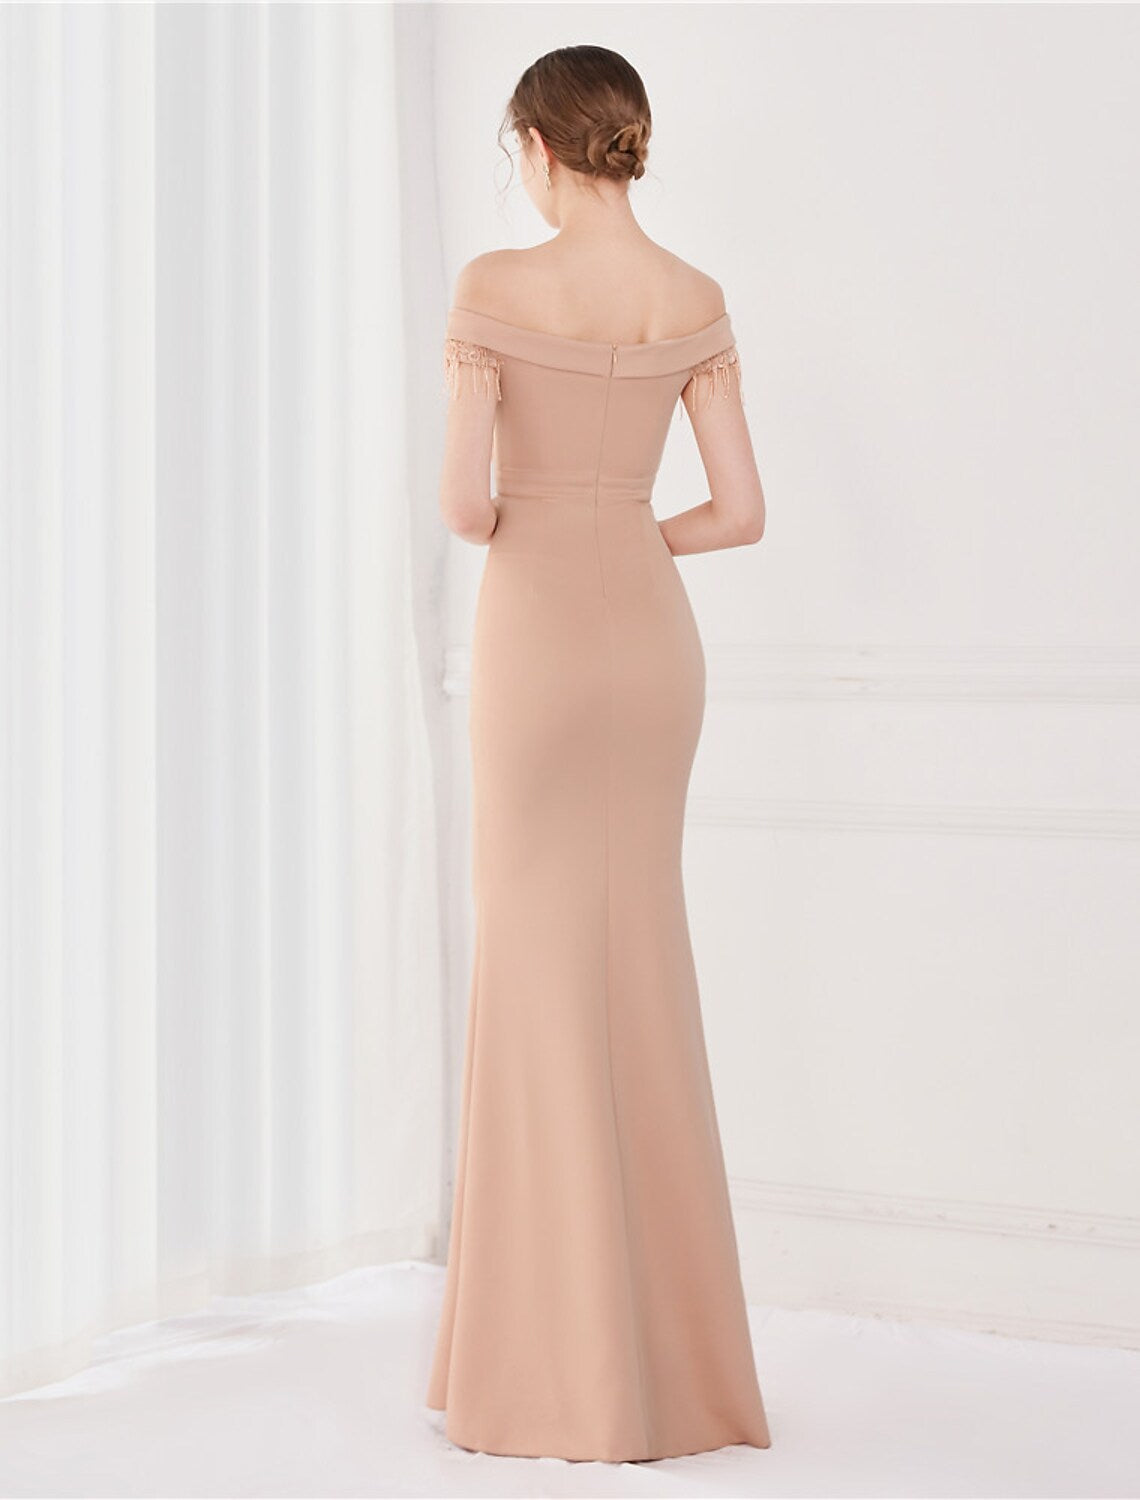 Elegant Sexy Wedding Formal Evening Dress Off Shoulder V Back Short Sleeve Floor Length Satin with Tassel